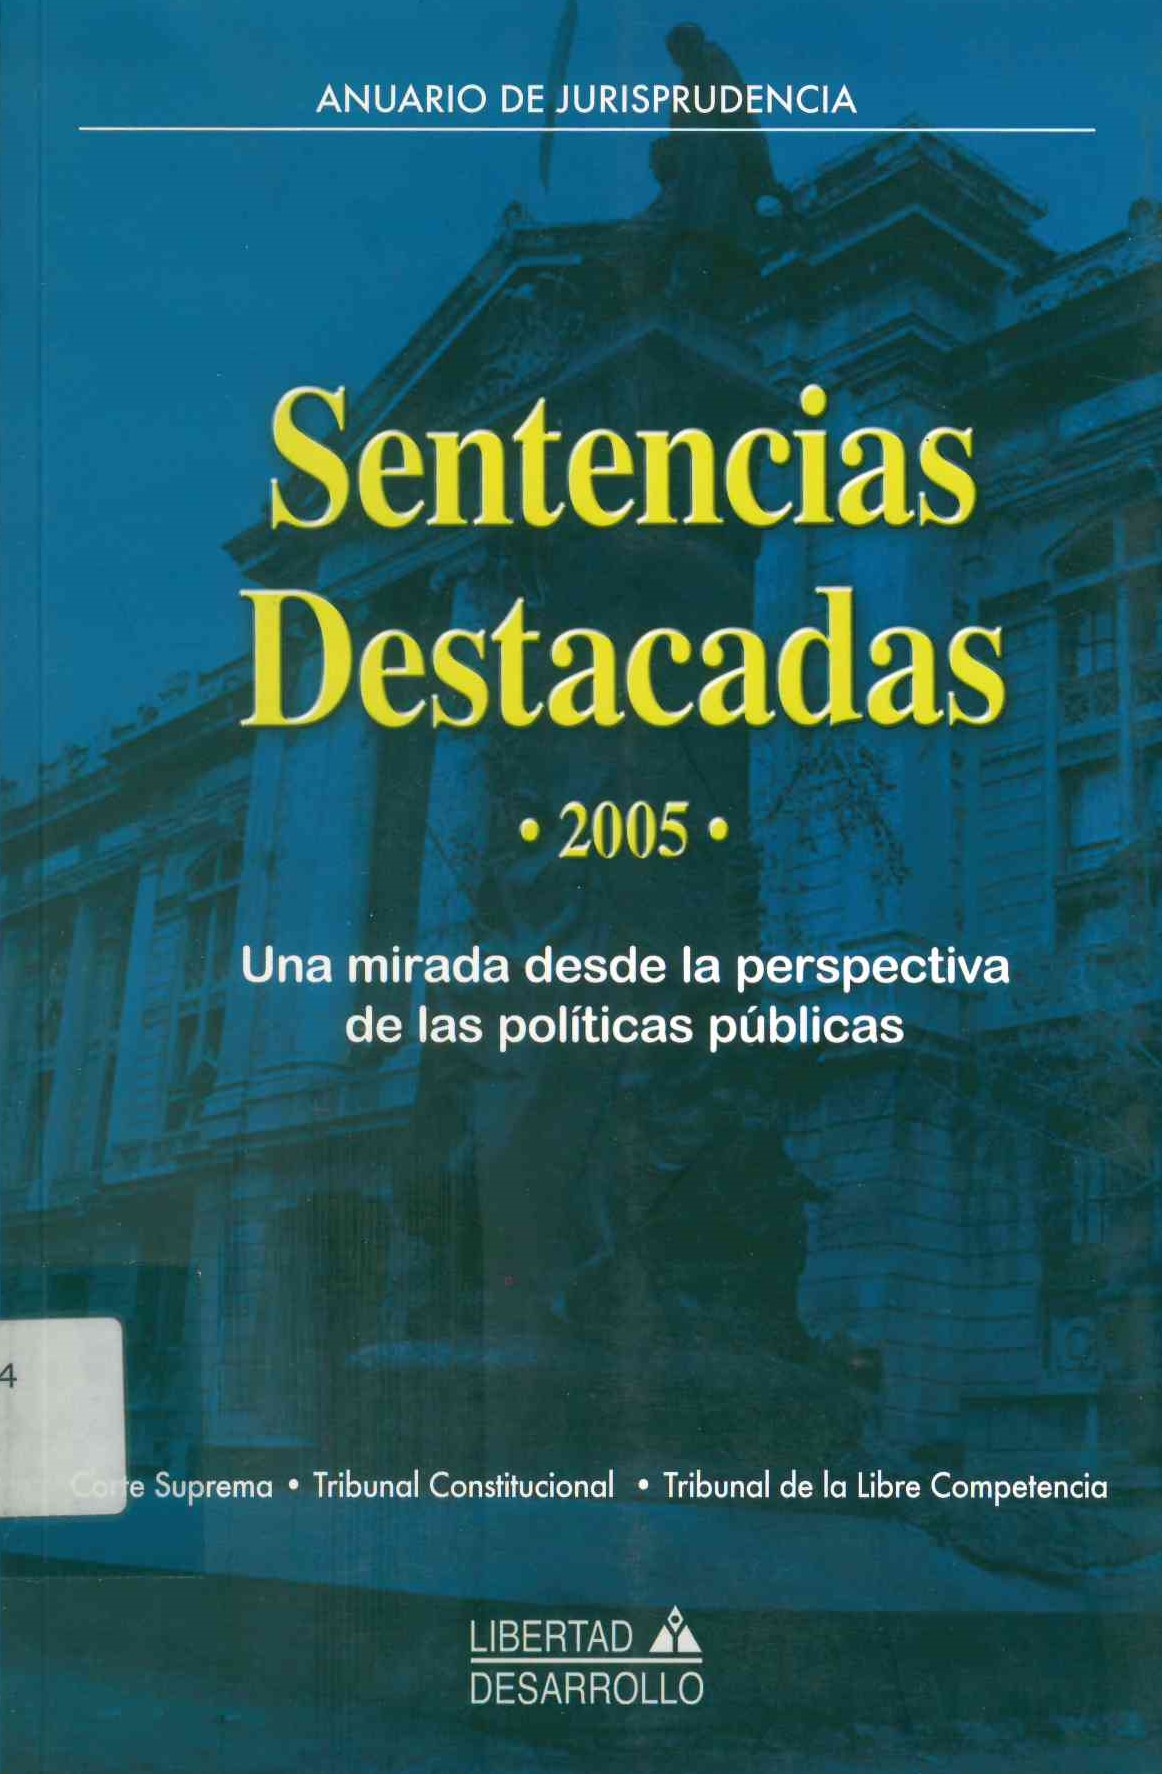 Sentencias destacadas 2005 : una mirada desde la perspectiva de las políticas públicas